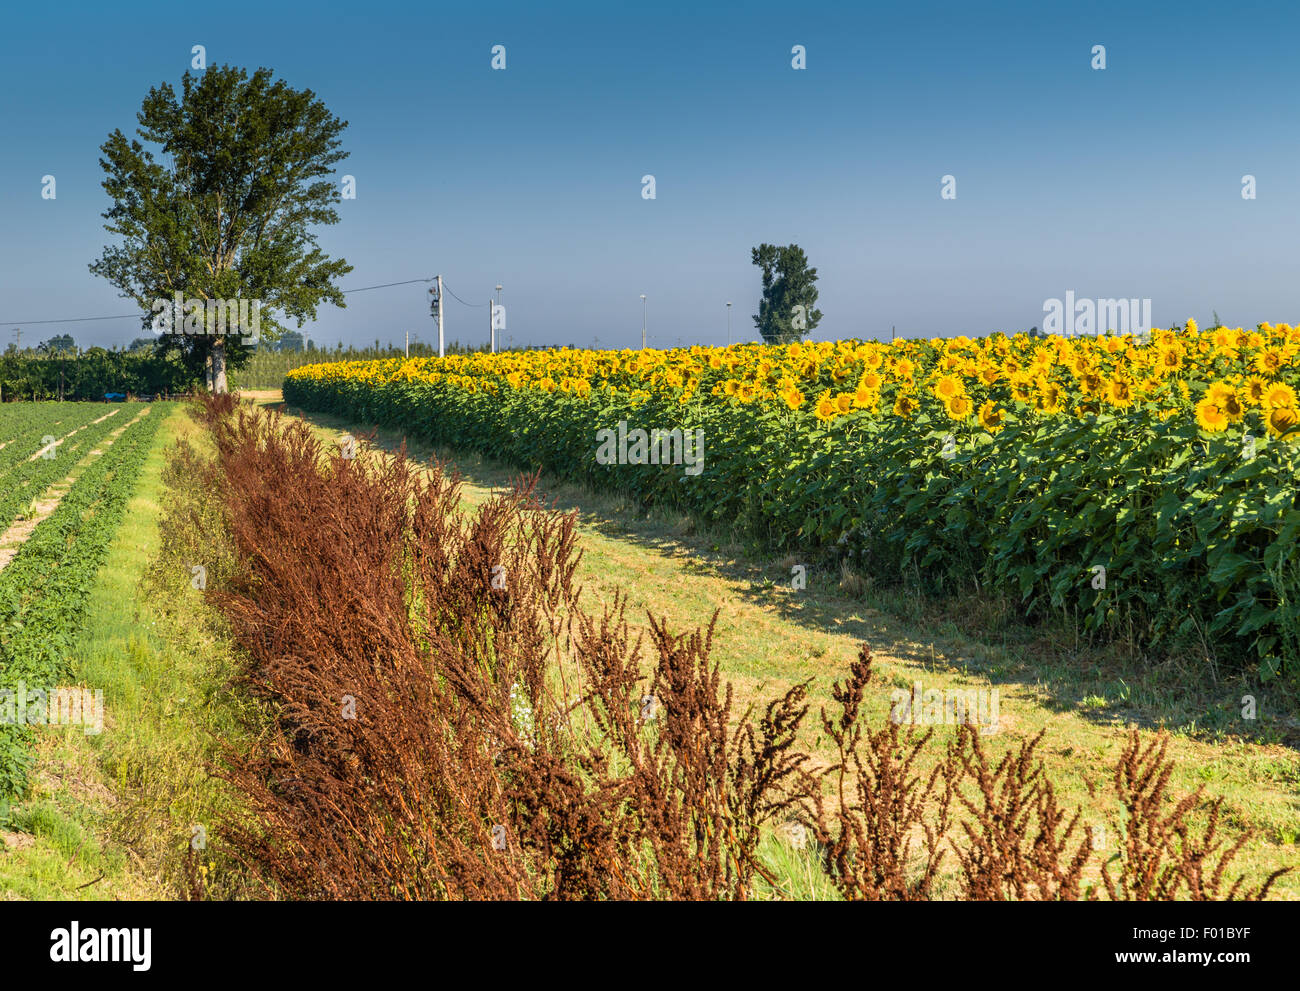 Agricoltura durante il periodo estivo - un paese di strada sterrata la guida ad un albero lungo rosso erbacce brunastro e un campo coltivato di fioritura di girasoli Foto Stock